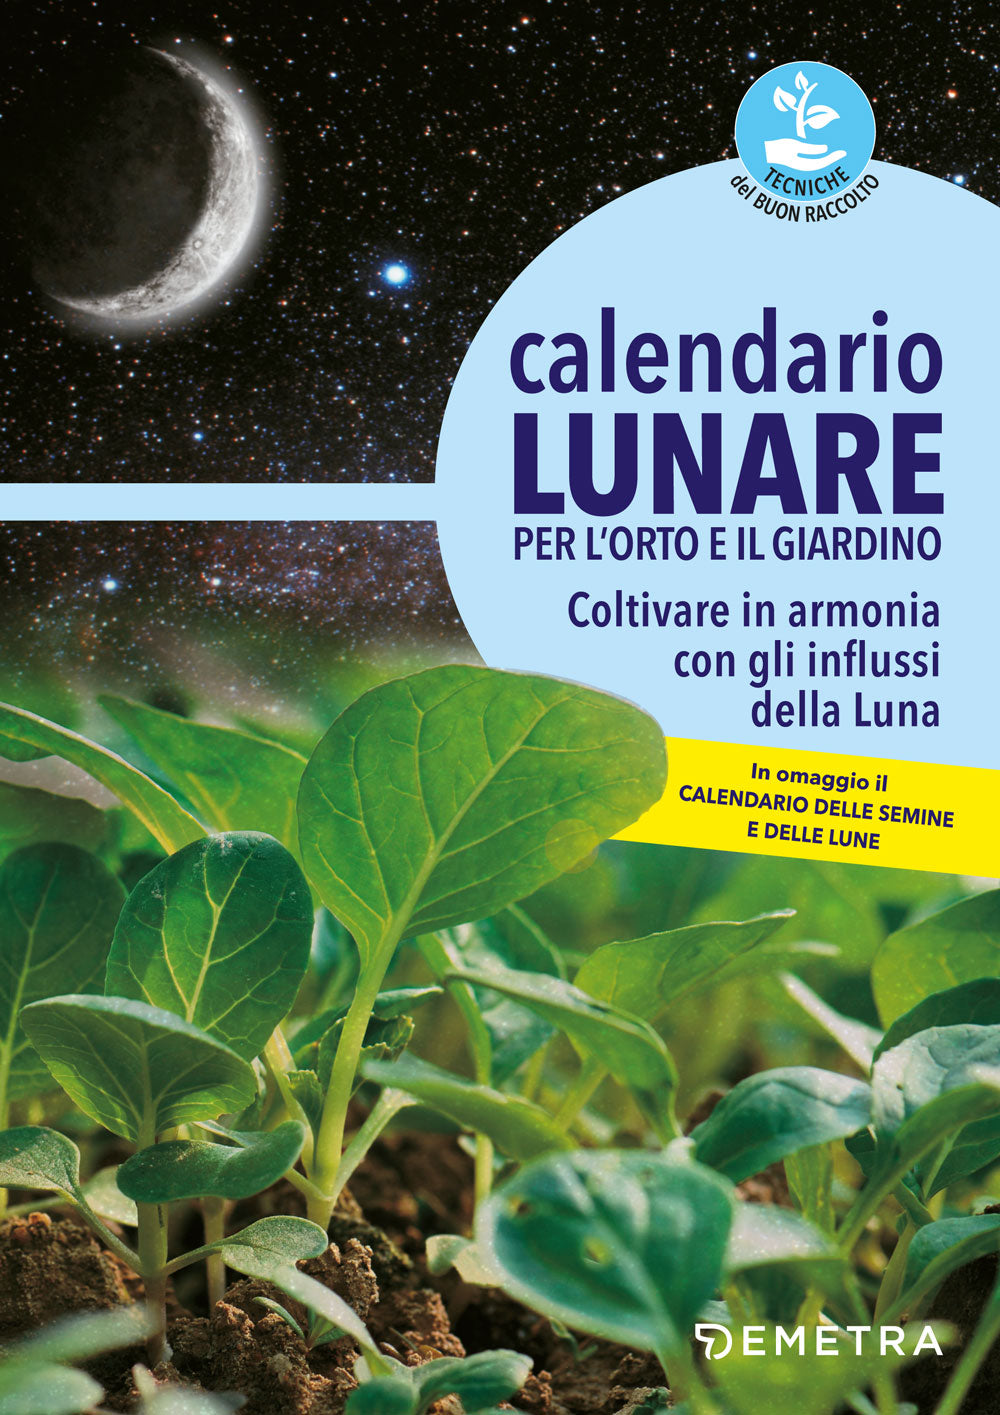 Calendario lunare per l'orto e il giardino::Coltivare in armonia con gli influssi della Luna - In omaggio il Calendario delle semine e delle lune